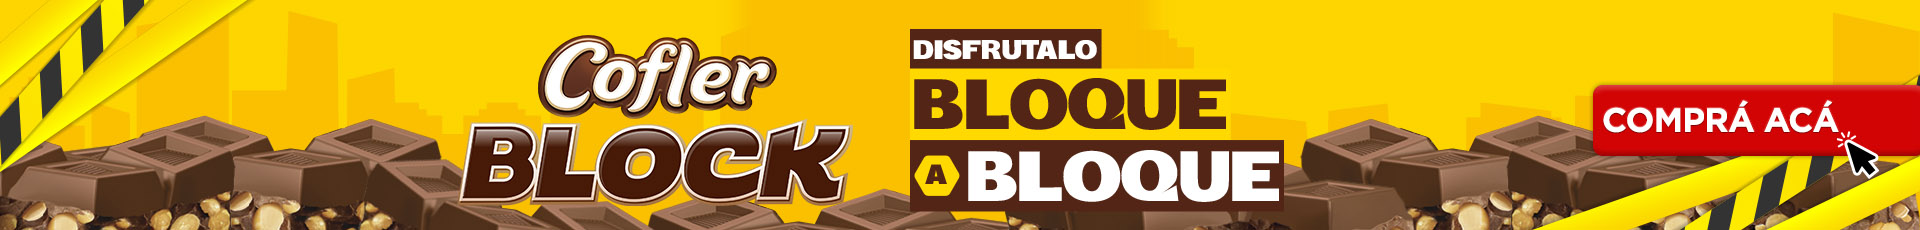 https://www.casarica.com.py/block?utm_source=web&utm_medium=banner&utm_campaign=block&utm_id=Arcor+Block&utm_term=block&utm_content=block